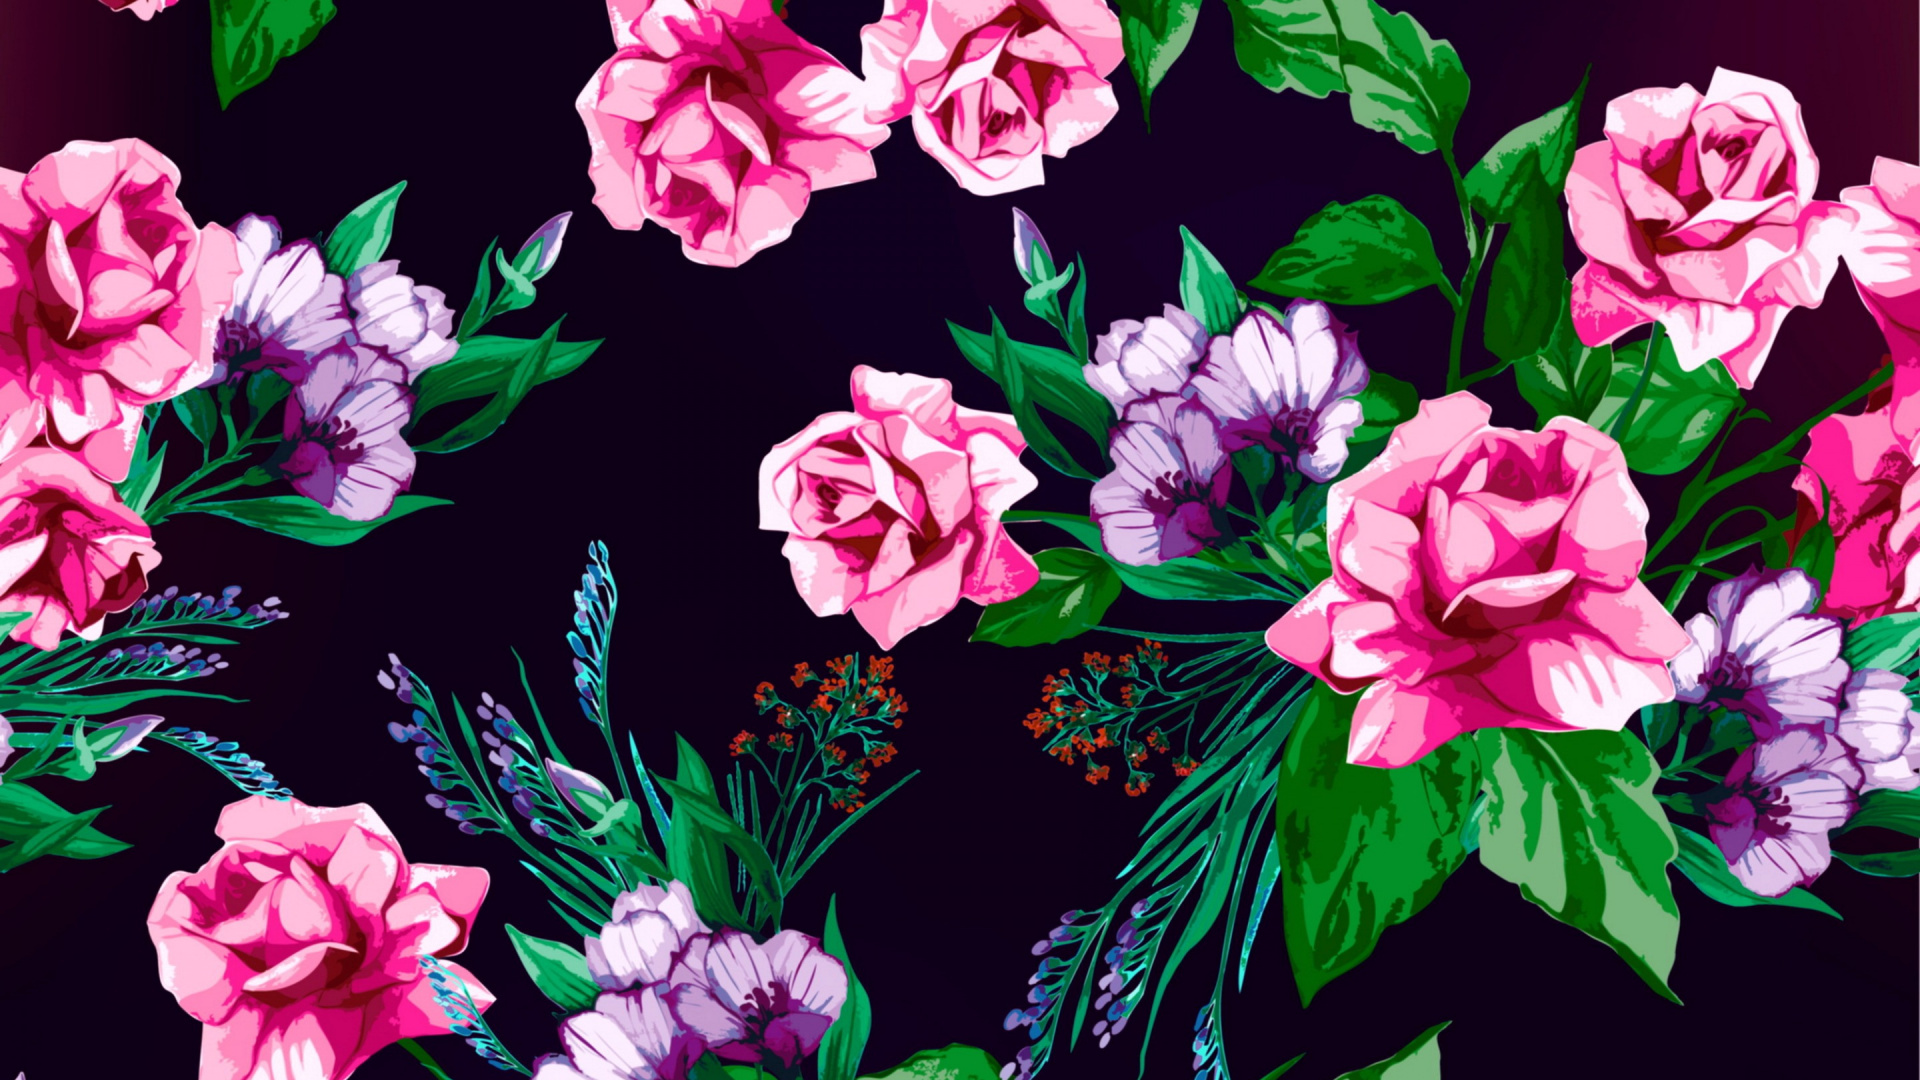 花卉设计, 显花植物, 粉红色, 牡丹, 品红色 壁纸 1920x1080 允许